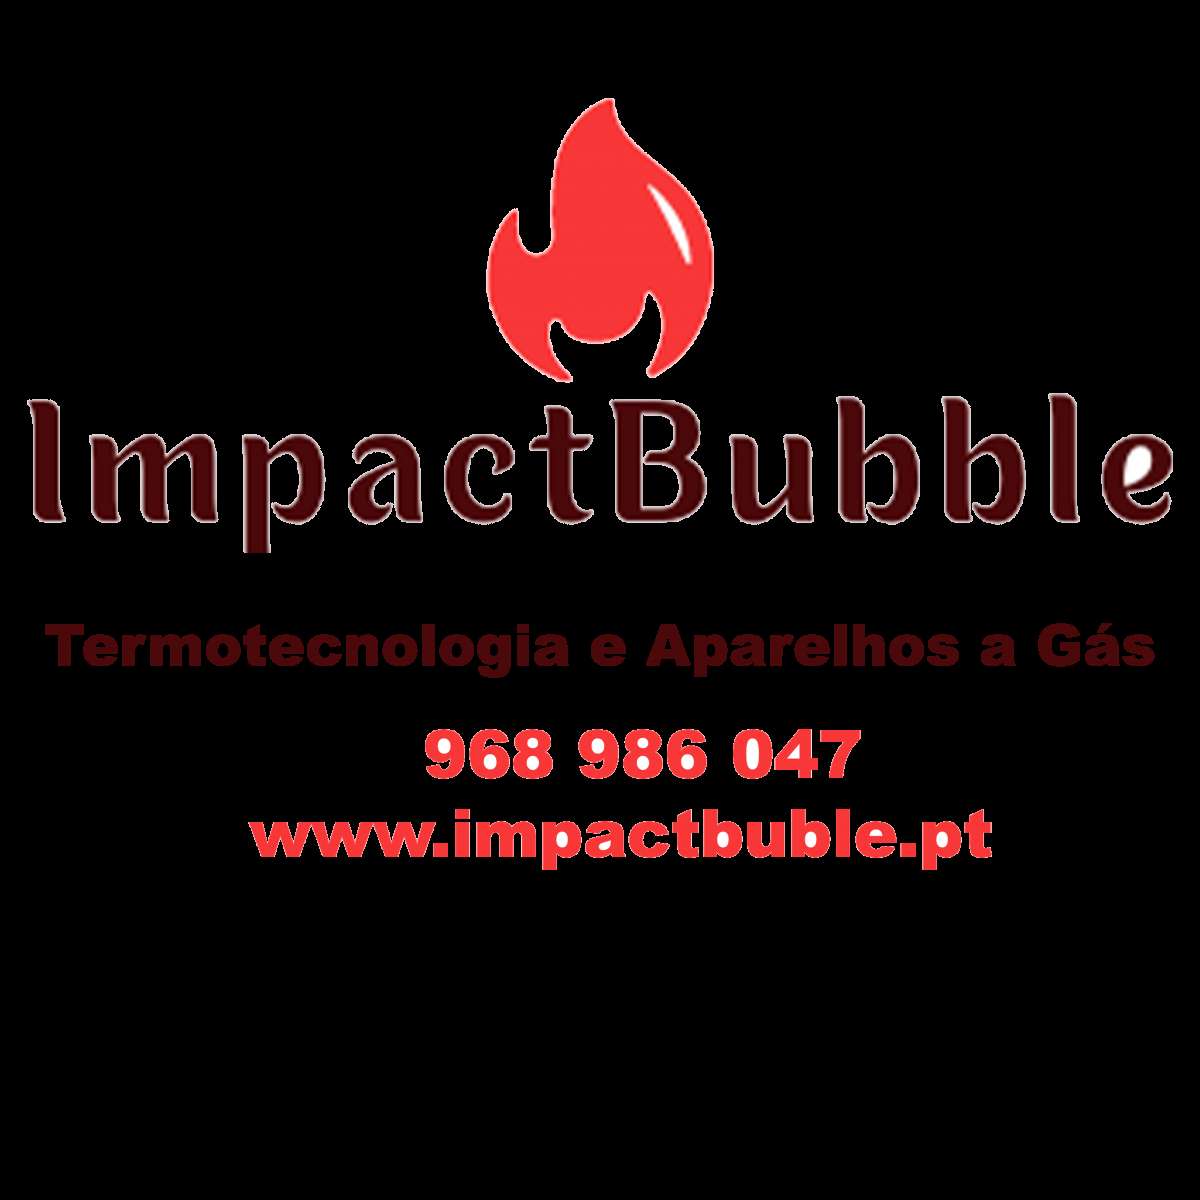 Impactbubble- Termotecnologia e Aparelhos a Gás - Oeiras - Instalação de Disjuntor ou Caixa de Fusíveis